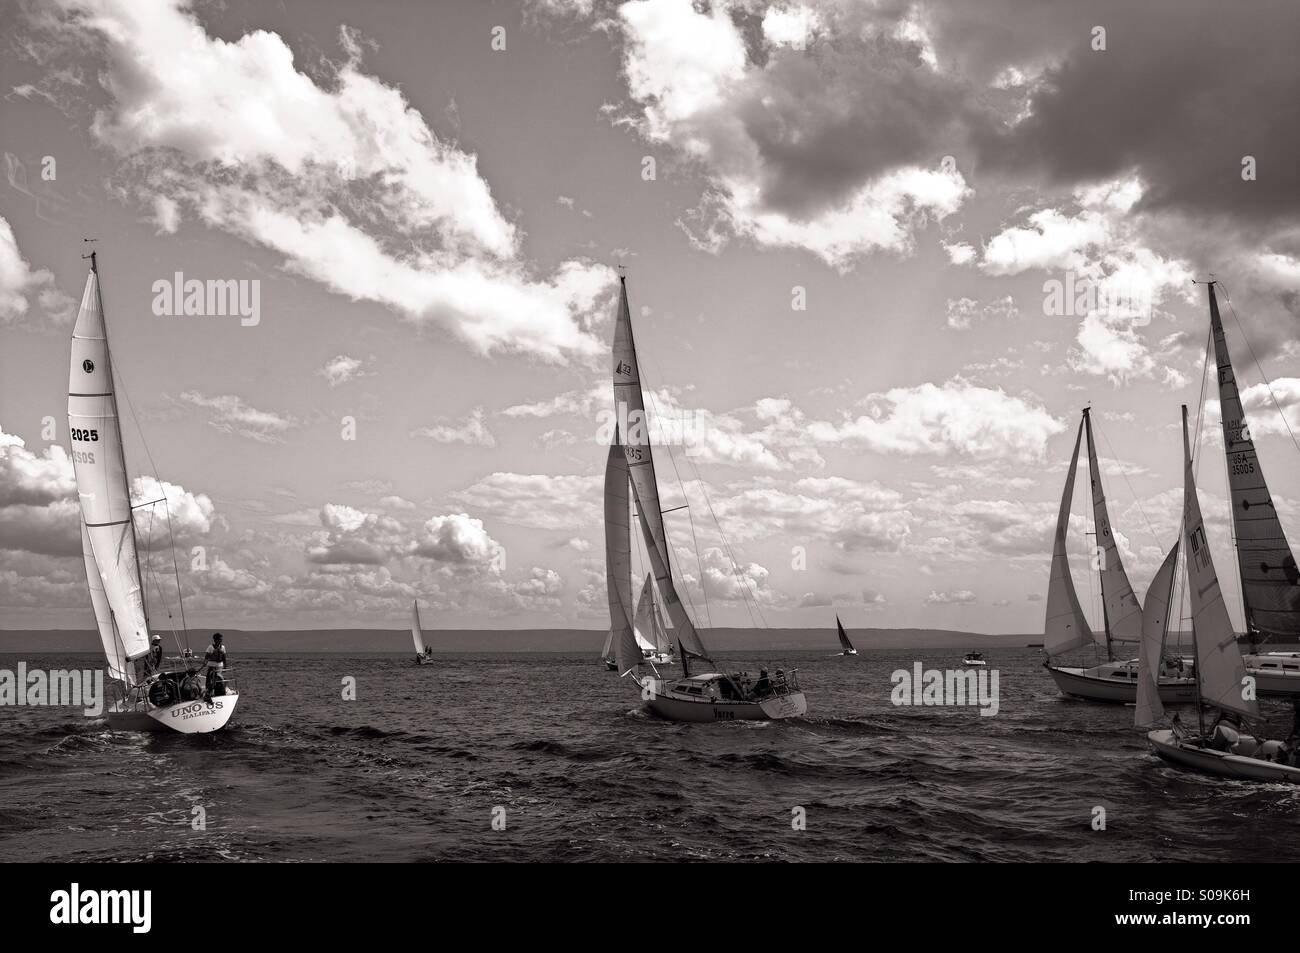 Regatta sailboat races in Baddeck, Nova Scotia. Stock Photo